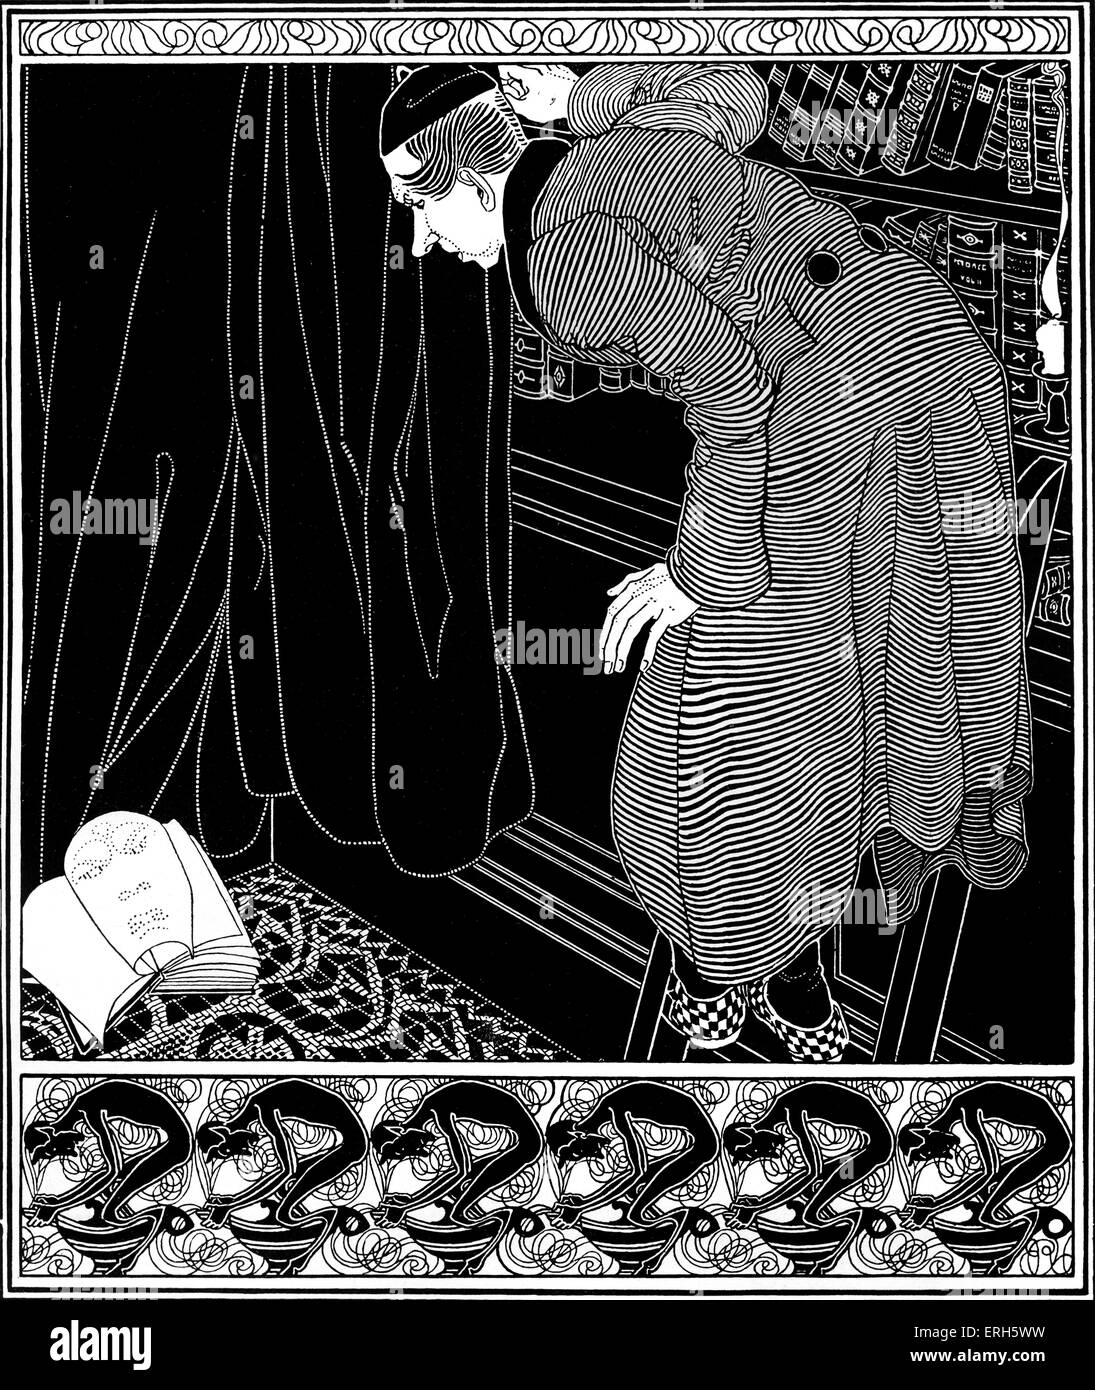 Le lecteur de Robert Louis Stevenson, illustration par E. R. Herman (dates inconnues). À partir de 'Fables' par RL Stevenson, publié en 1914. Romancier, poète écossais, billet d'auteur, 13 novembre 1850- 3 décembre 1894. Banque D'Images